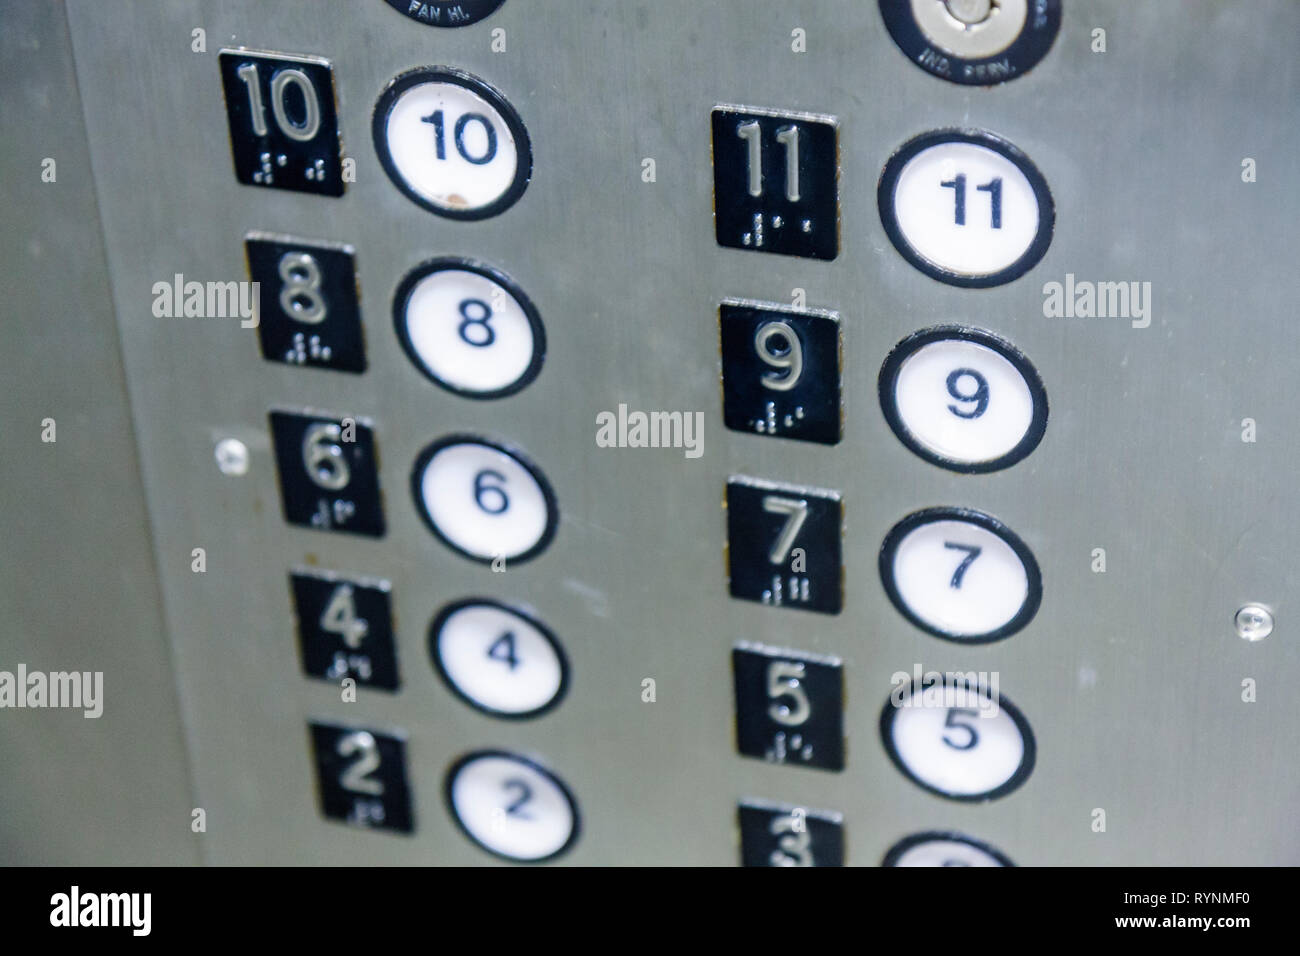 Miami Beach Florida,ascenseur,ascenseur,boutons,métal,braille,numéros,étages,dix,onze,huit,neuf,sept,six,cinq,quatre,deux,rond,rectangle,FL090213160 Banque D'Images